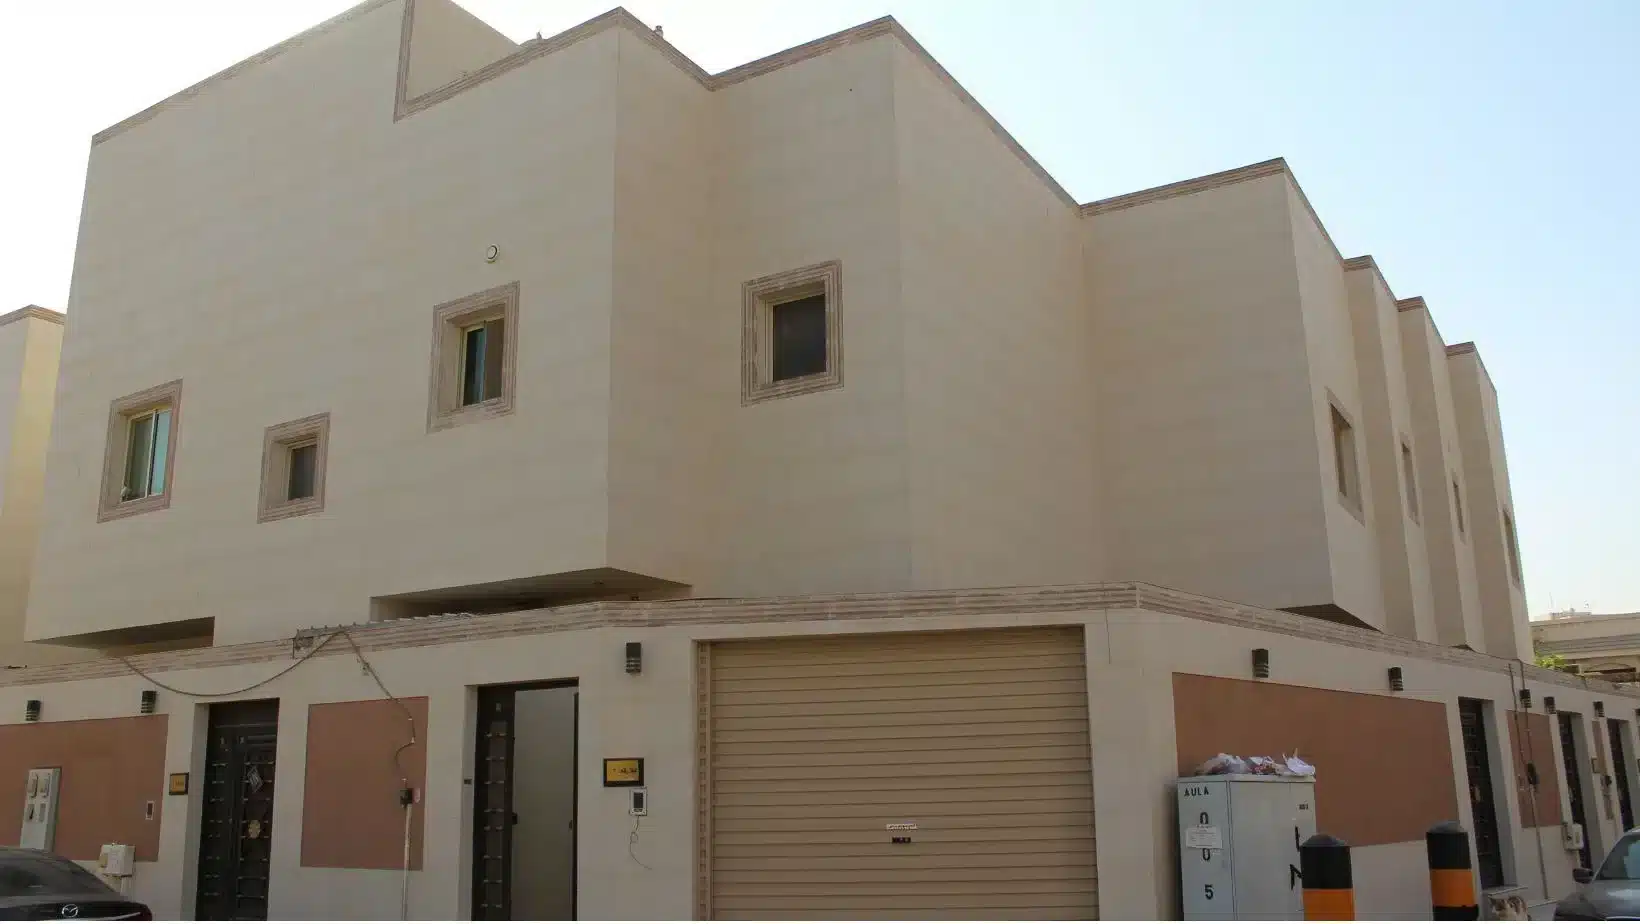 فلل العليا للإيجار بالعليا الرياض. Olaya villas for rent in Olaya, Riyadh.